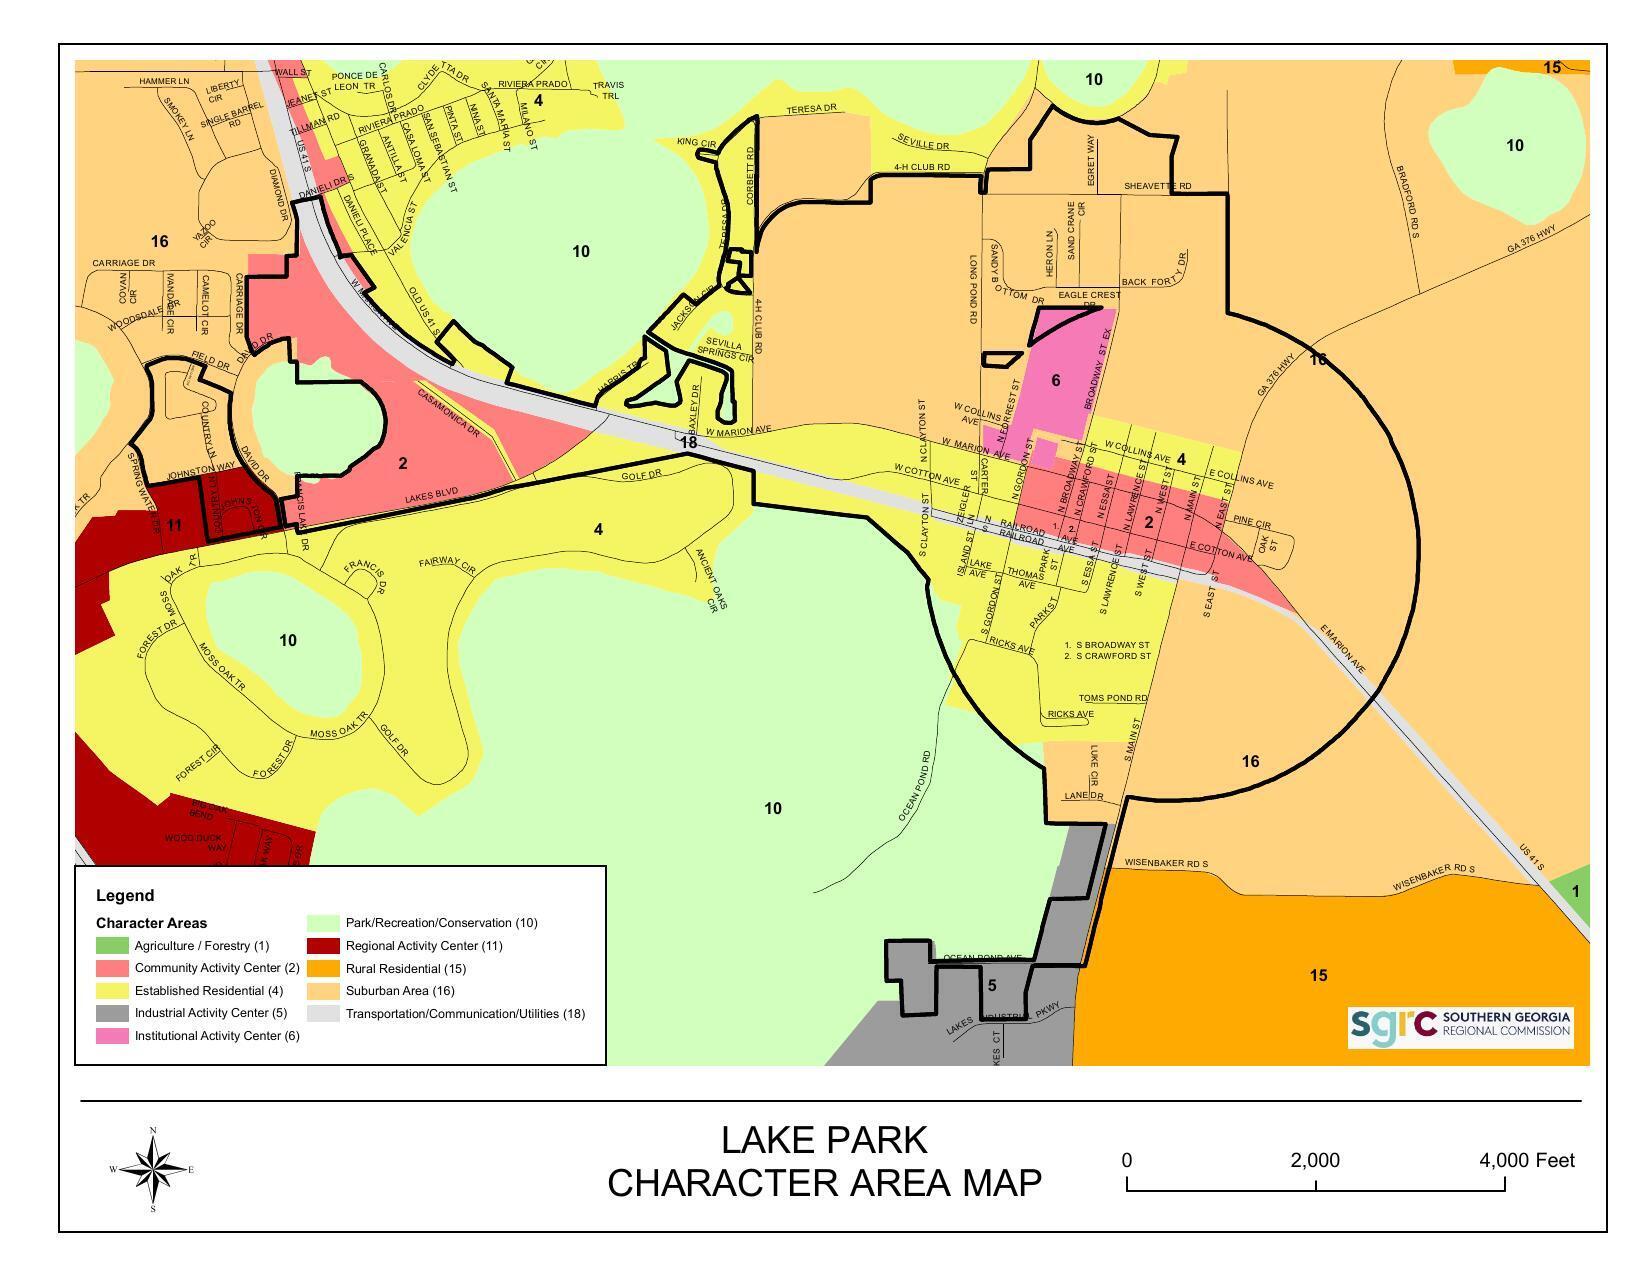 Lake Park Character Area Map, courtesy Elizabeth Backe, SGRC